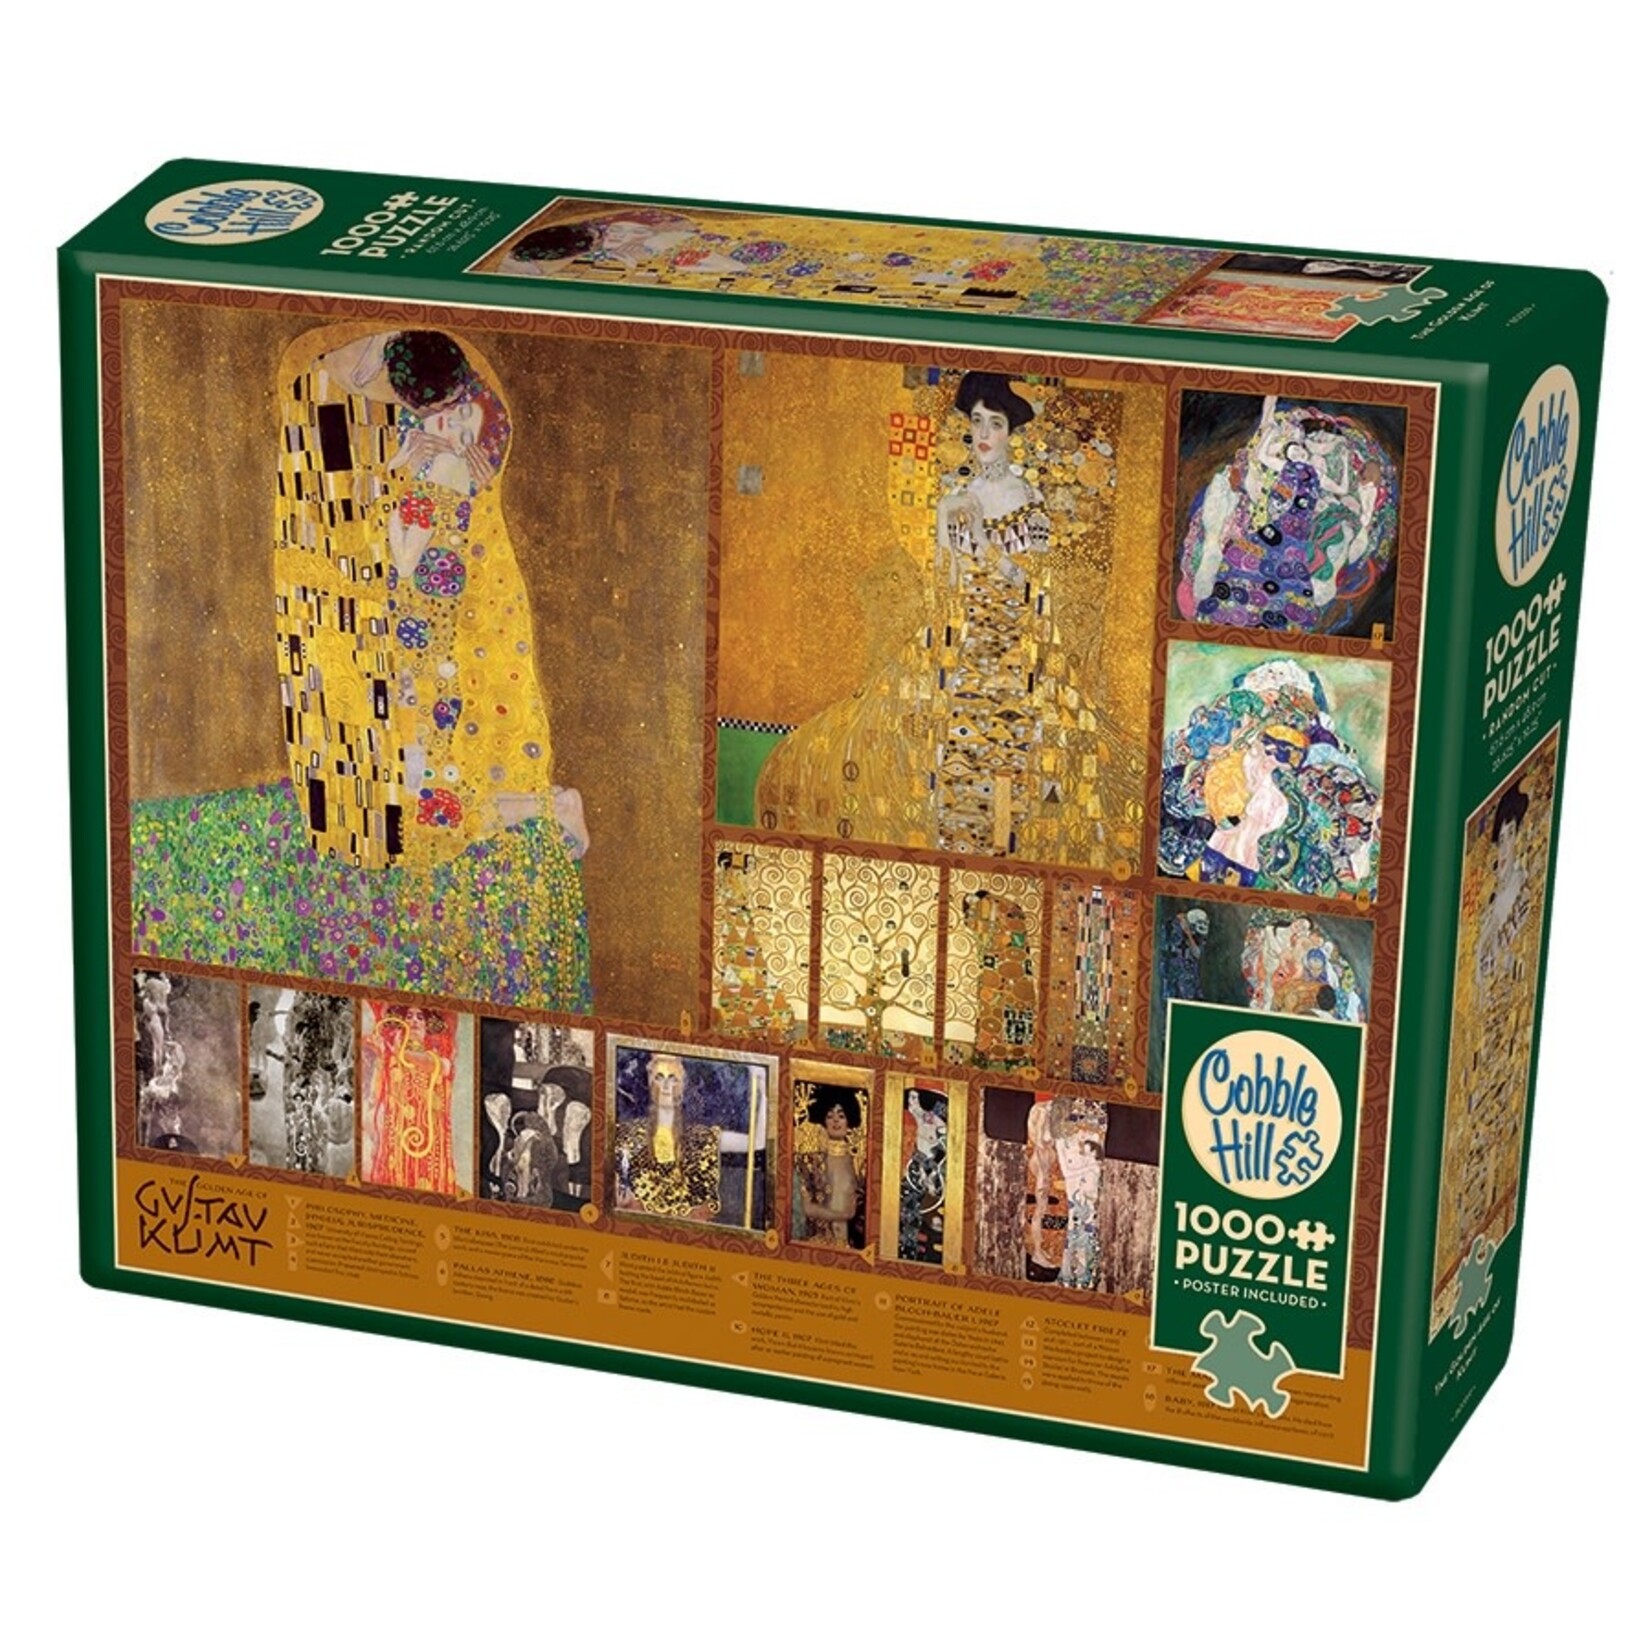 Cobble Hill Cobble Hill: The Golden Age of Klimt Puzzle (1000ct)